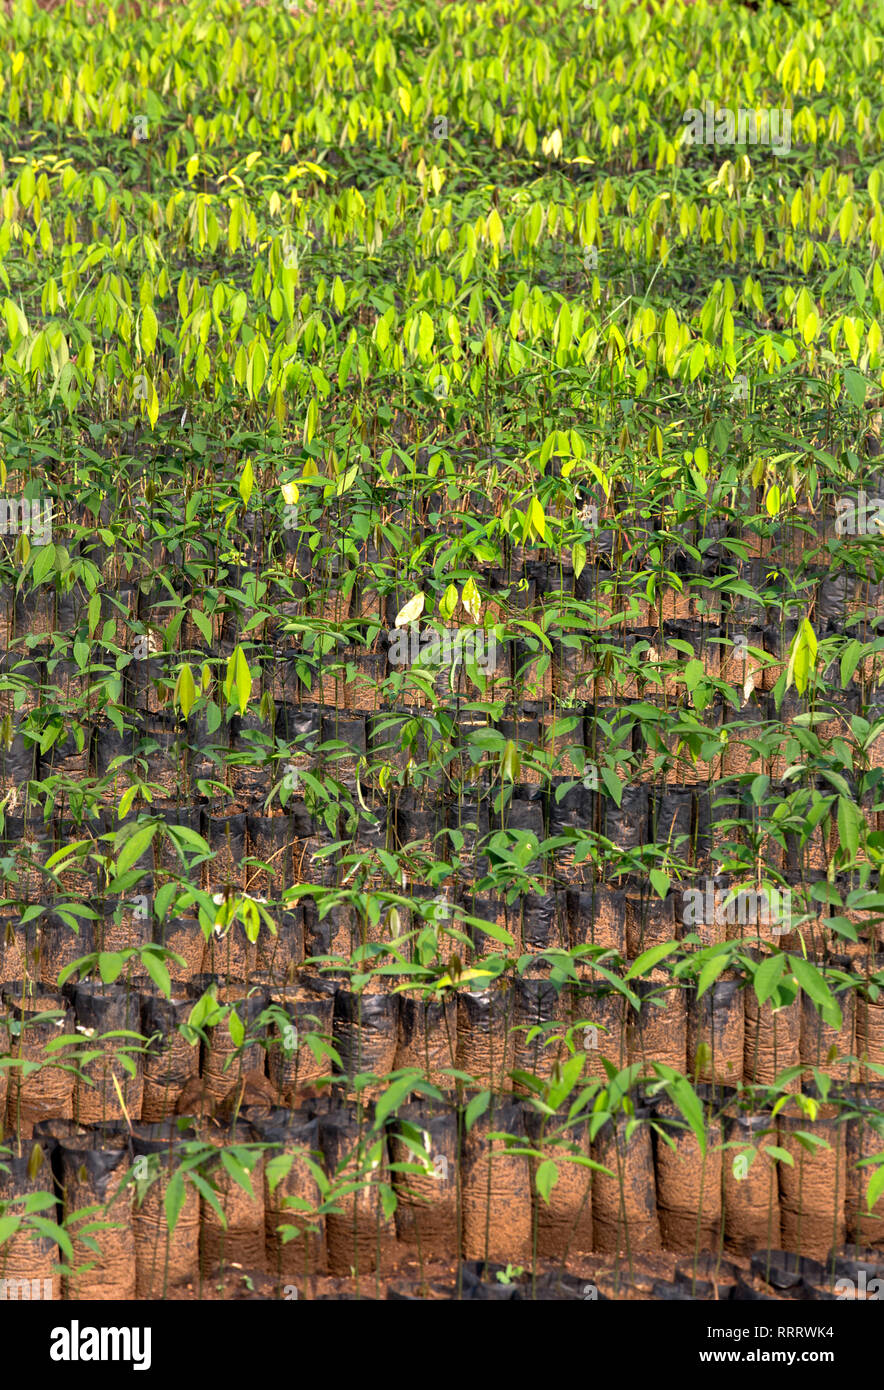 Gummi Pflanzen für die Landwirtschaft in eine Baumschule, Gummi, Kautschuk Landwirtschaft, Kerala, Indien bereit, Indien, Landwirtschaft, pradeep Subramanian Stockfoto